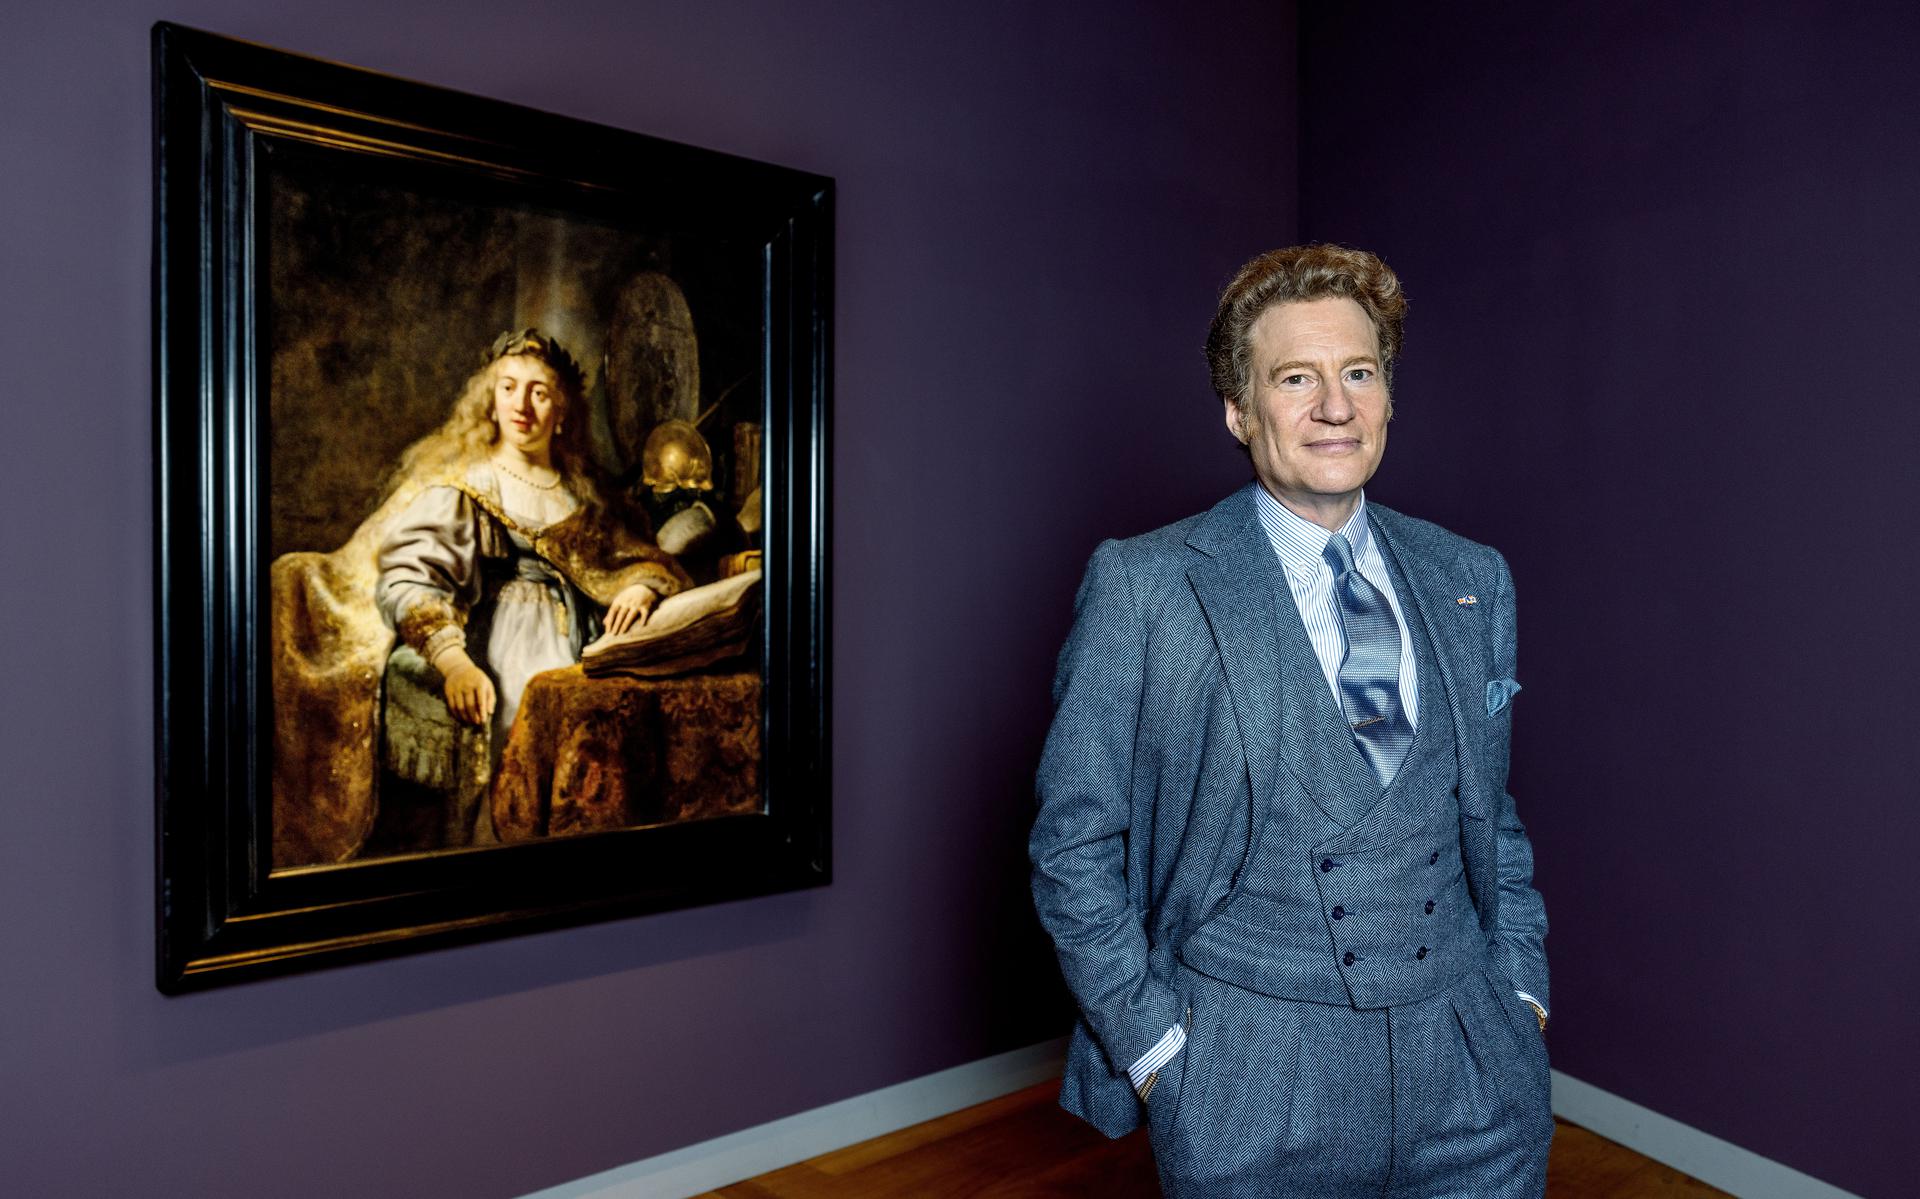 De Amerikaanse verzamelaar Thomas Kaplan van de Leiden Collection in de Hermitage bij het schilderij 'Minerva' van Rembrandt van Rijn uit 1635. 